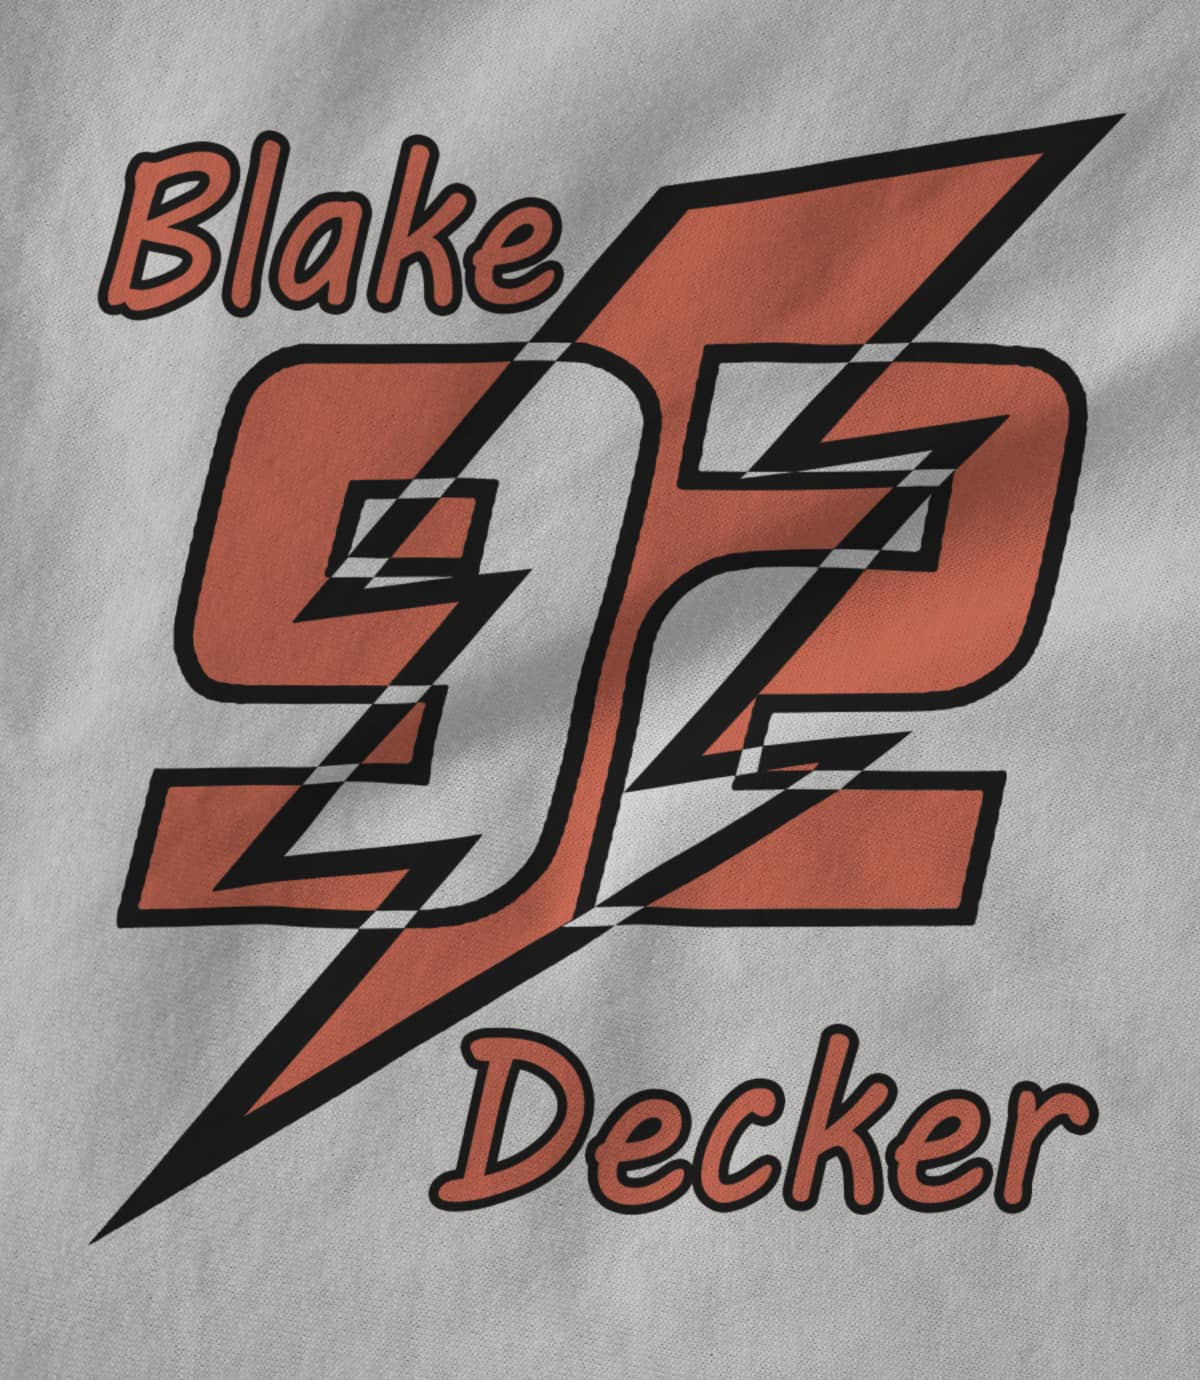 Blake Decker